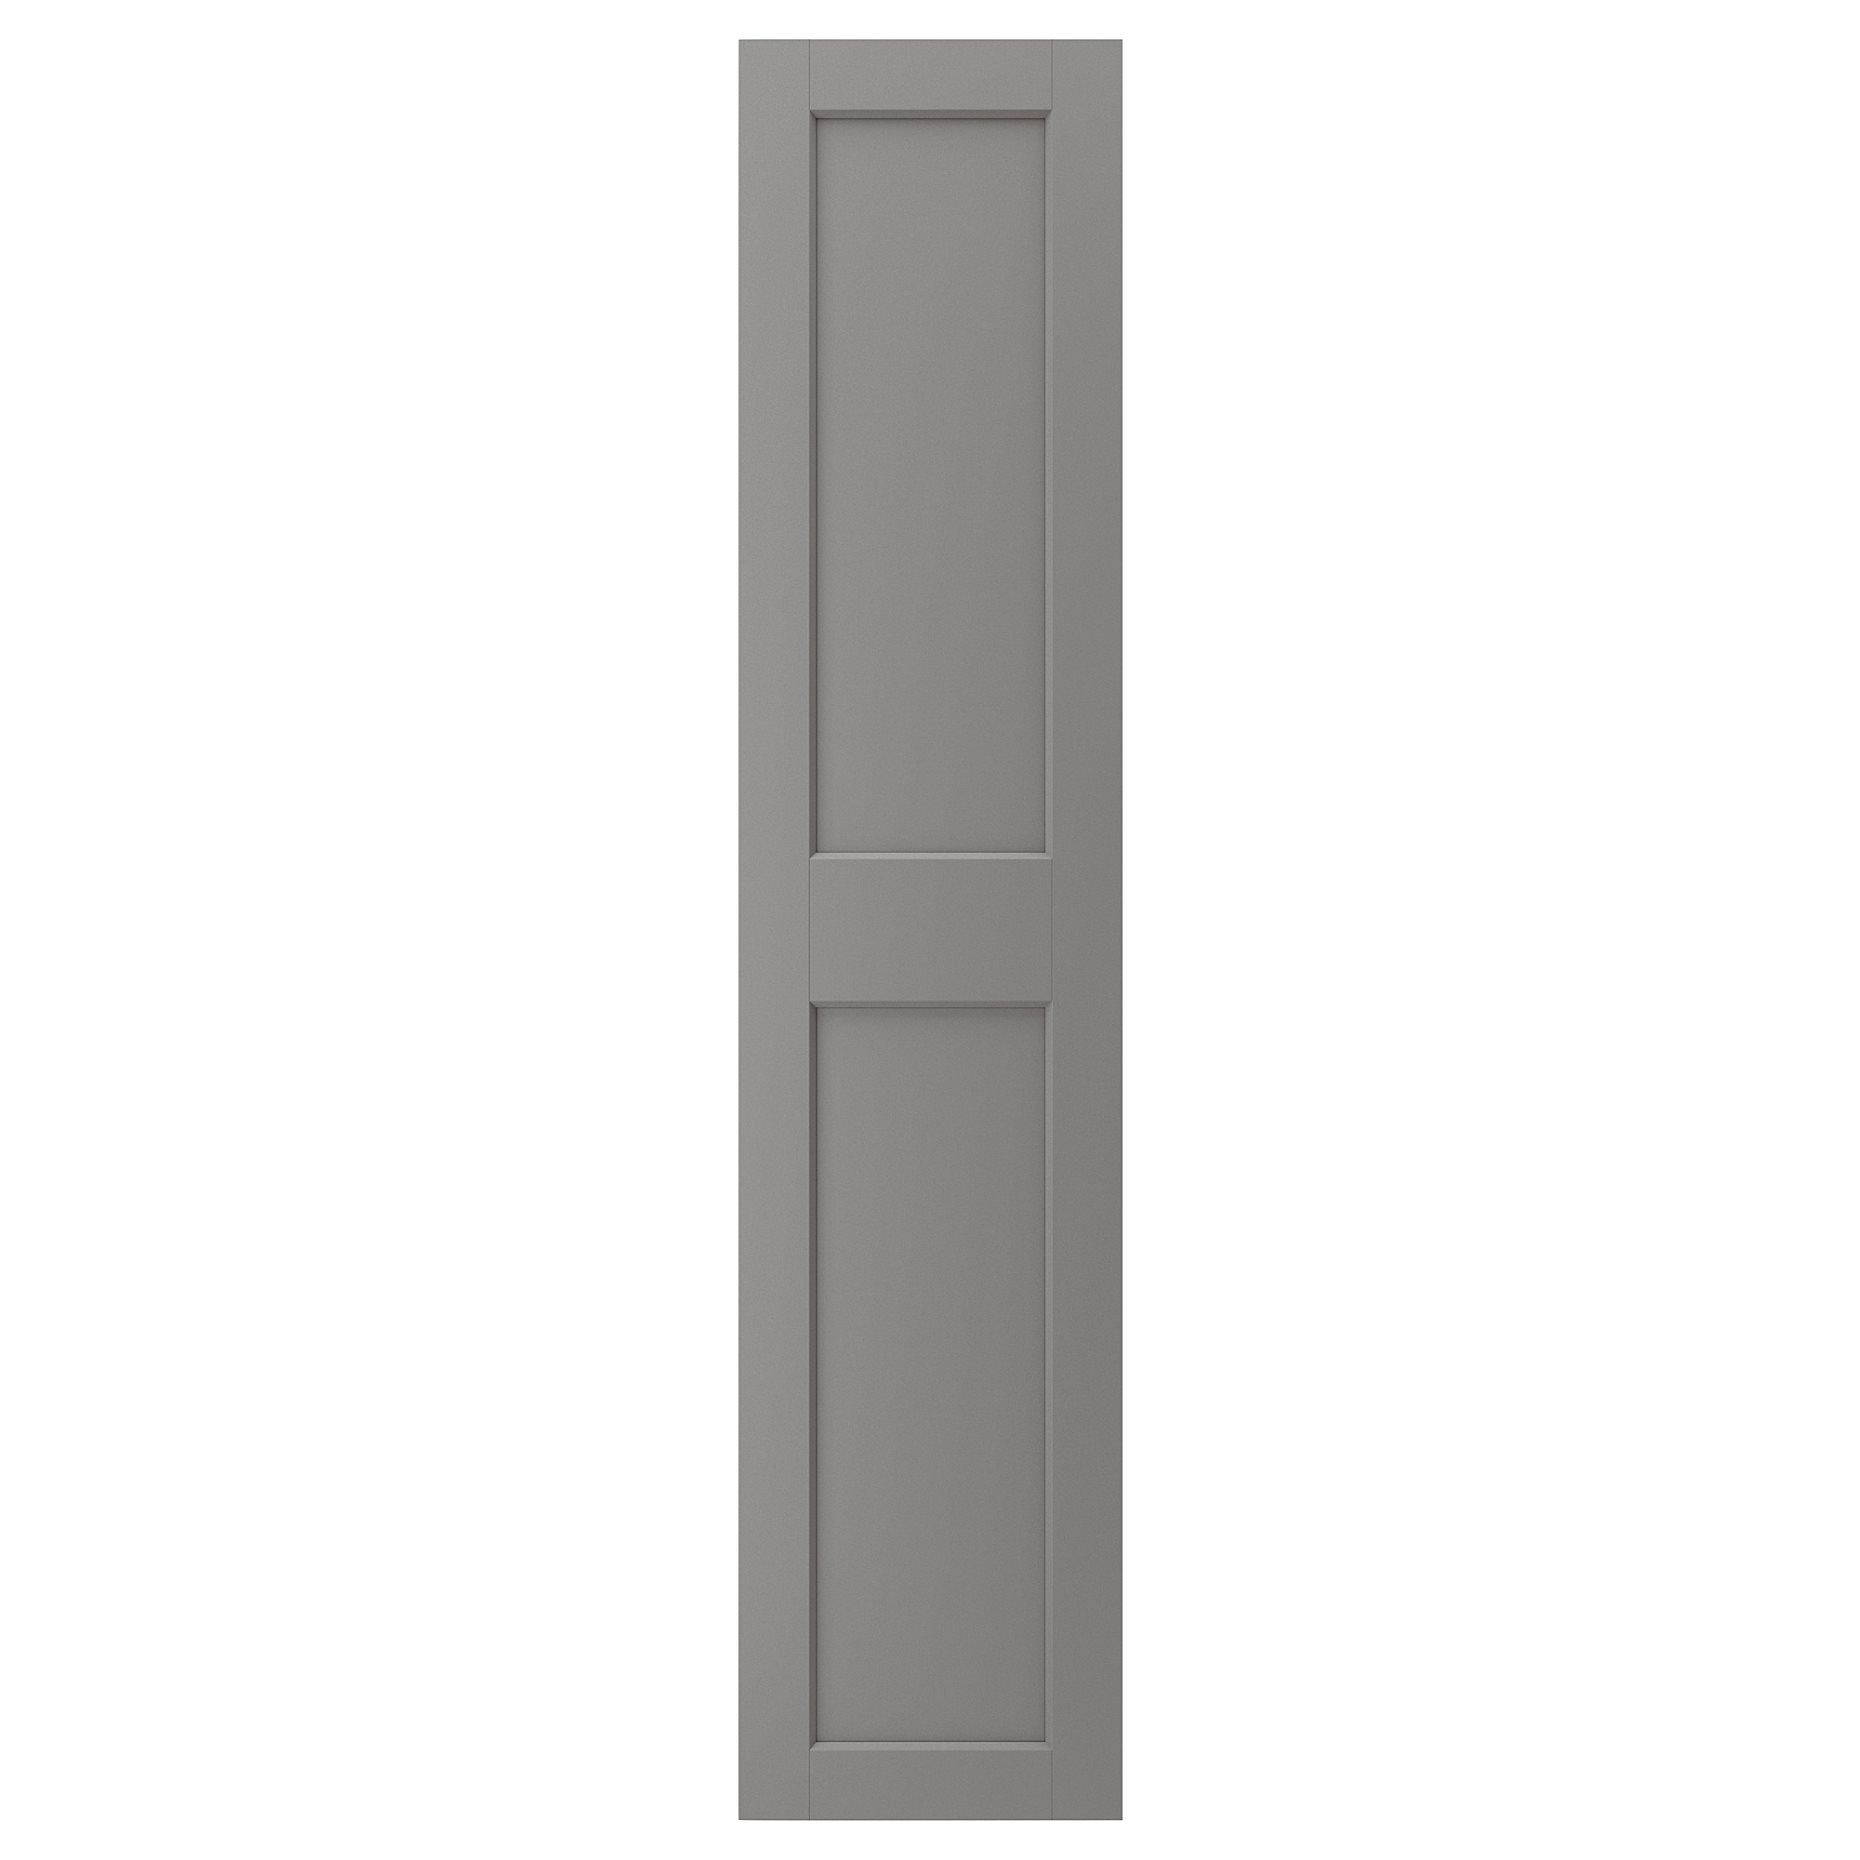 GRIMO, πόρτα, 50x229 cm, 804.351.88